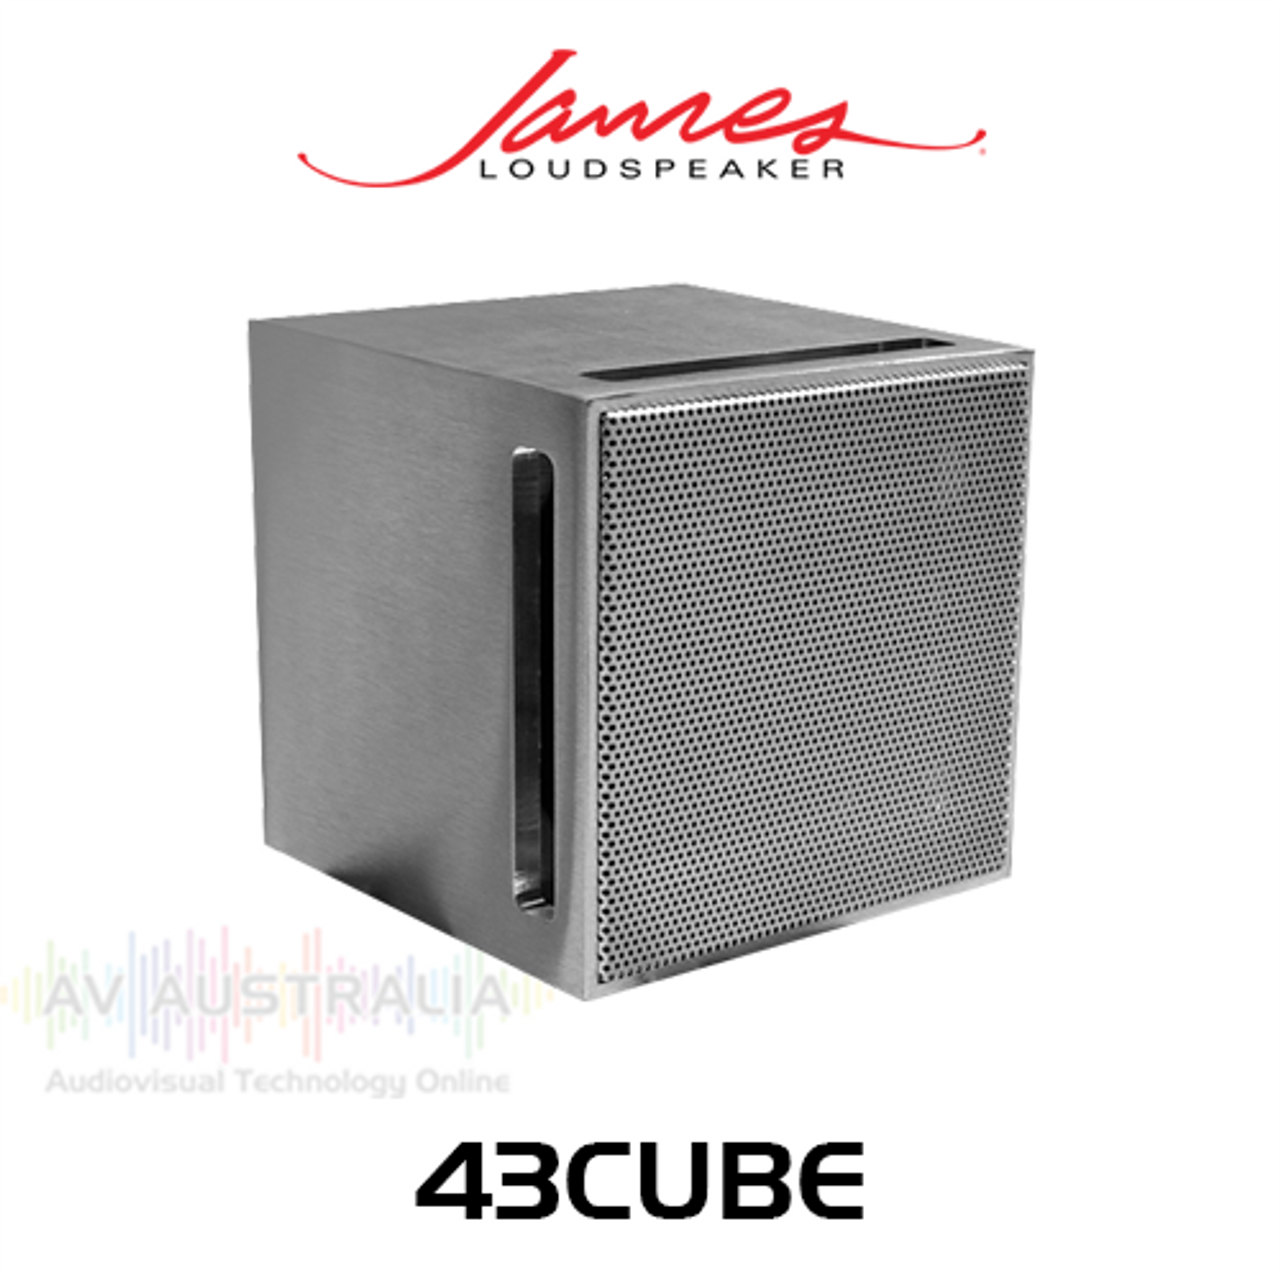 James Loudspeaker 43CUBE 4" Full-Range Bookshelf Speaker (Each)